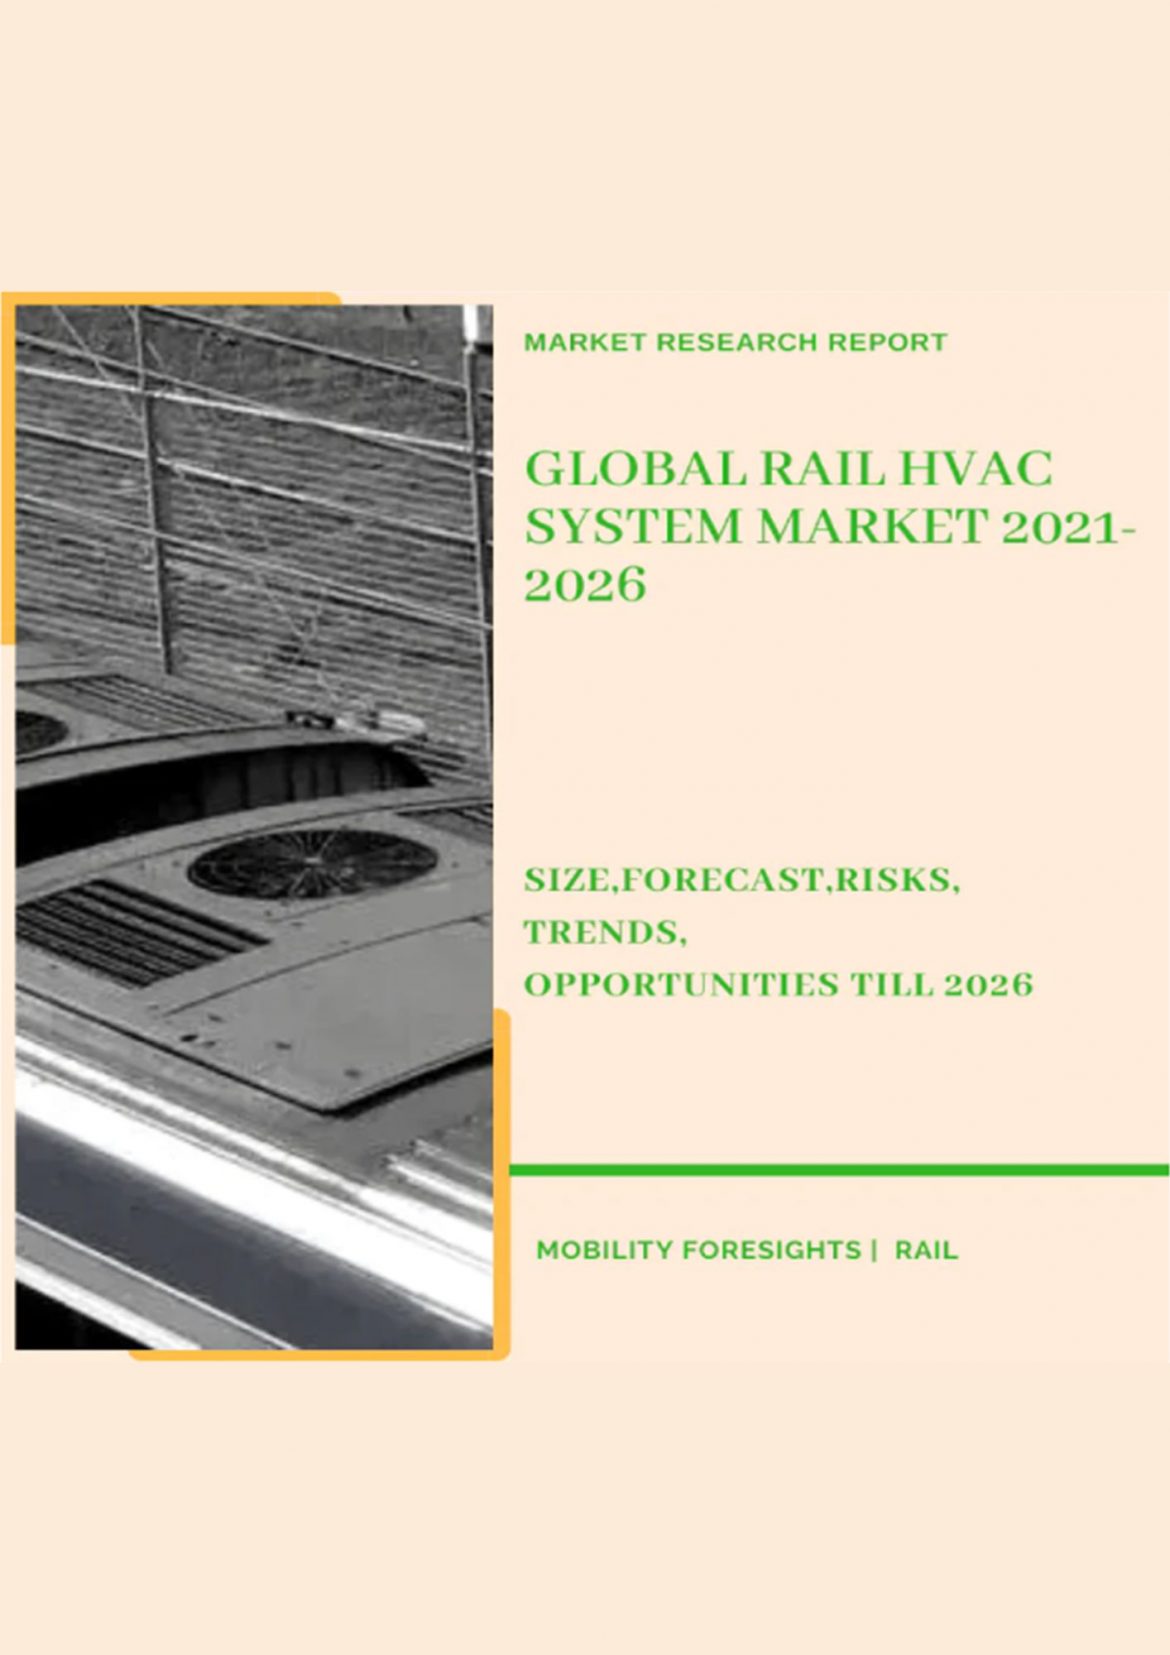 Global Rail HVAC System Market 2021-2026